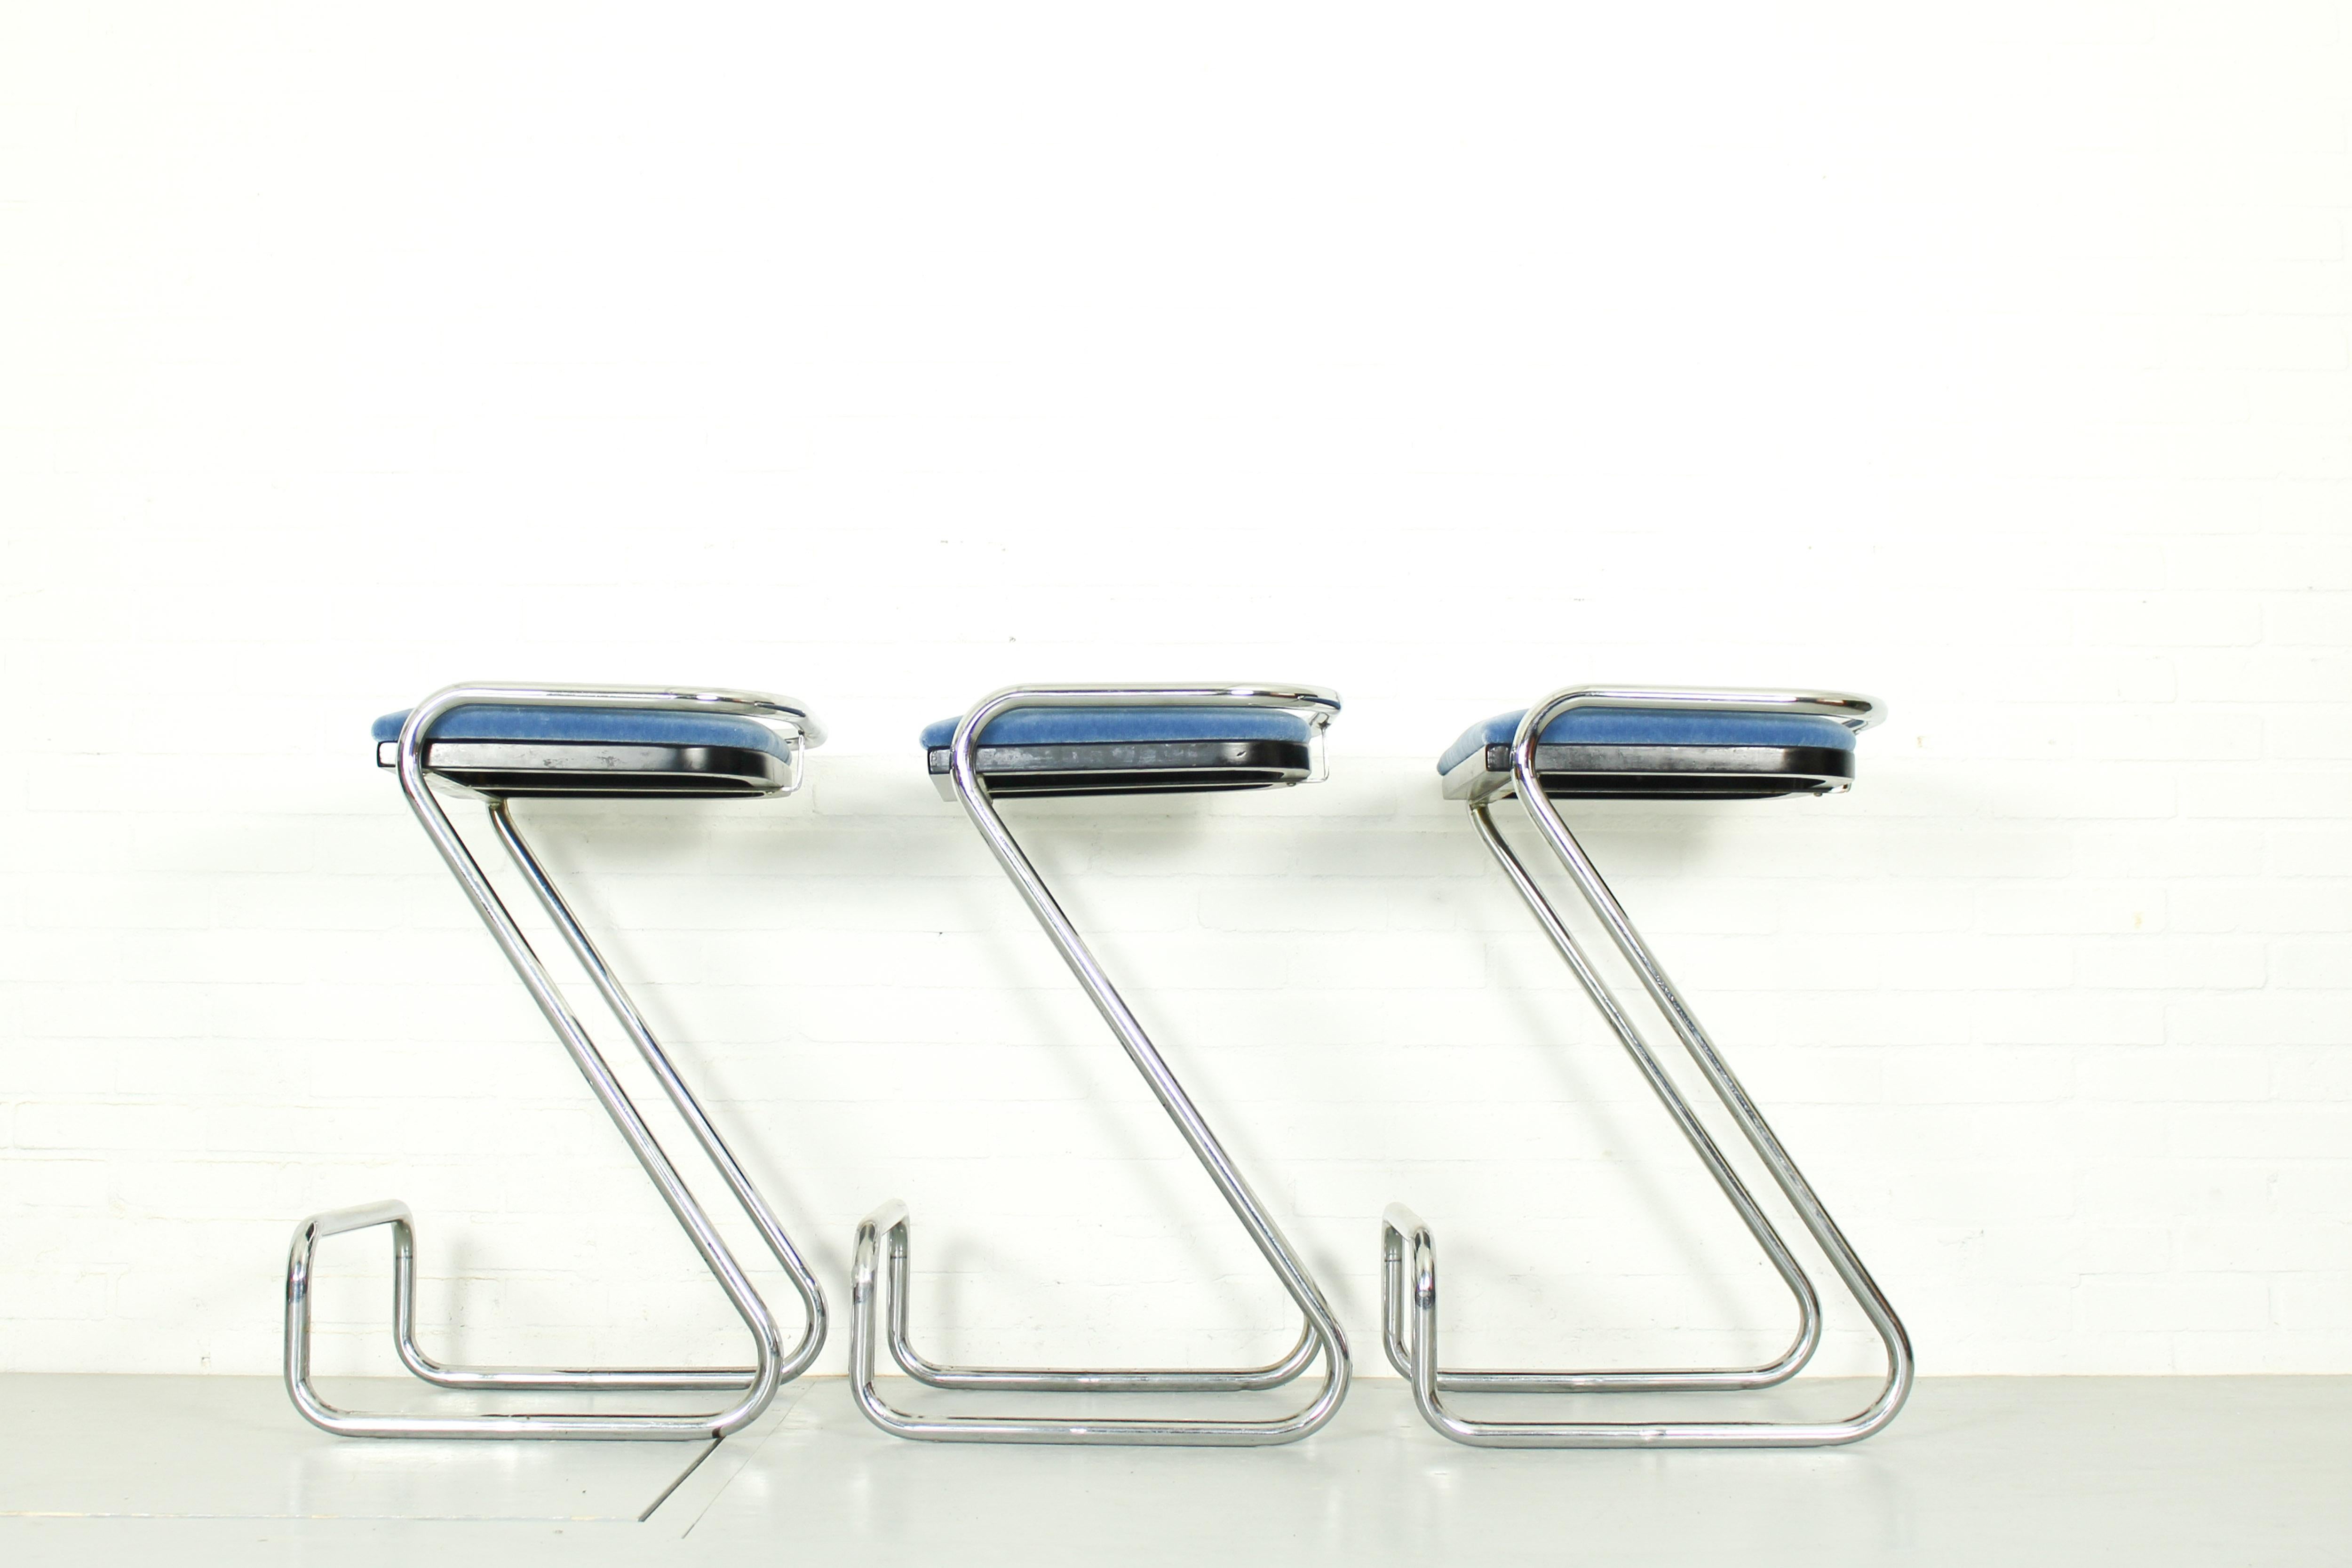 Dans le style de Charlotte Perriand, un ensemble de 3 tabourets de bar minimalistes en tube d'acier chromé. Forme A avec repose-pieds surélevés. Sièges rembourrés en tissu mohair bleu clair. Signé 